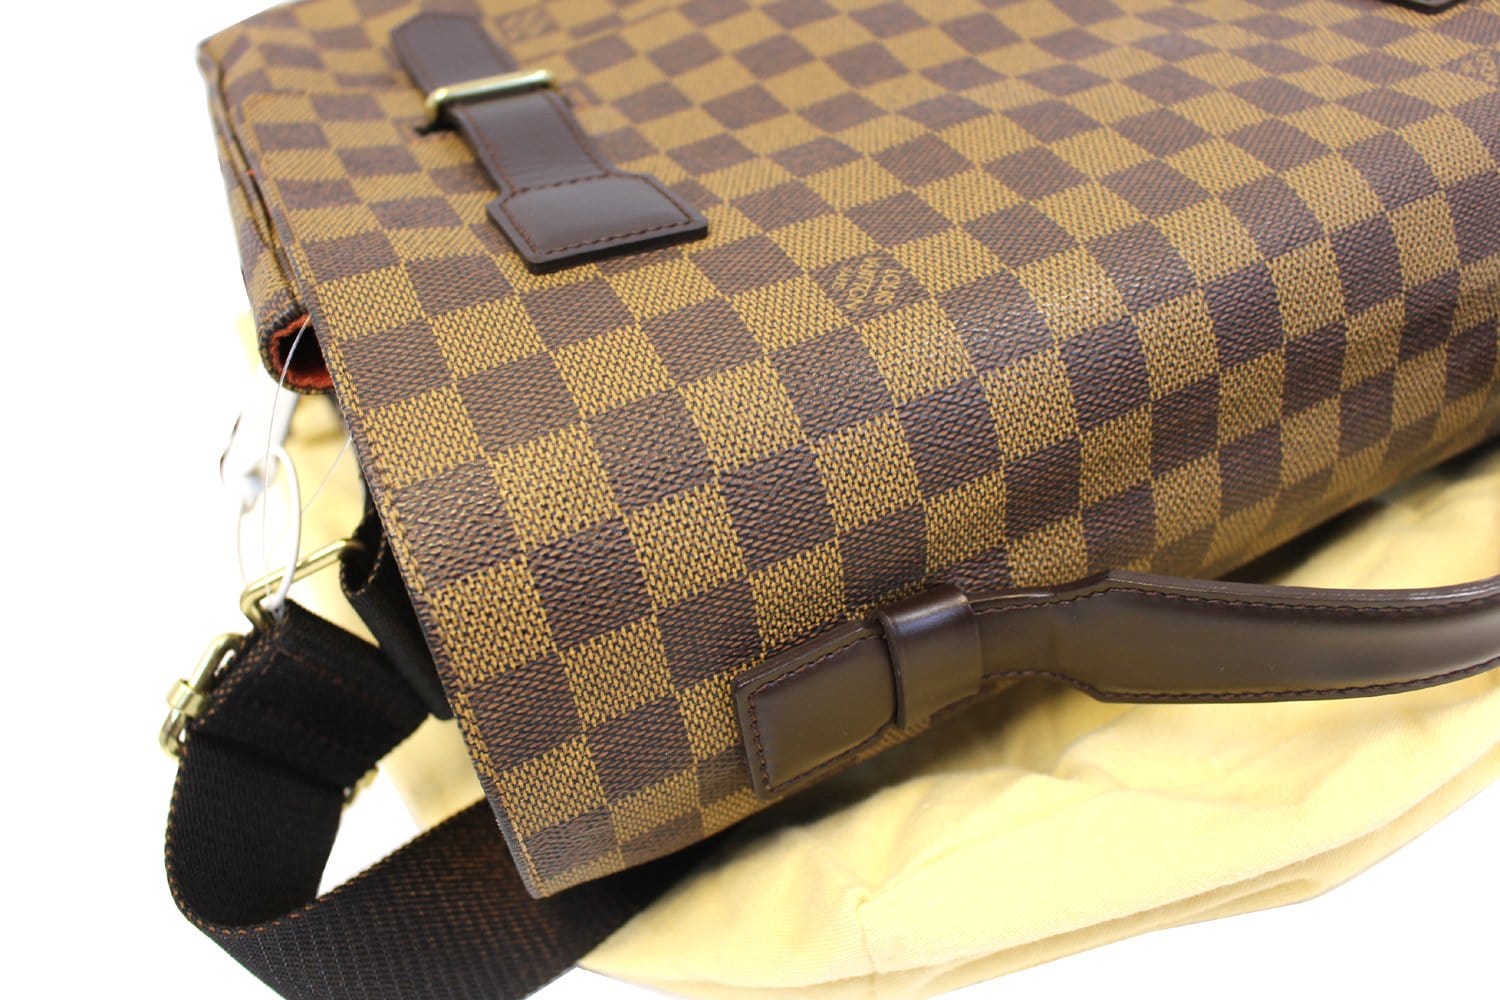 Louis Vuitton Damier Ebene Broadway Messenger Bag N42270 Brown